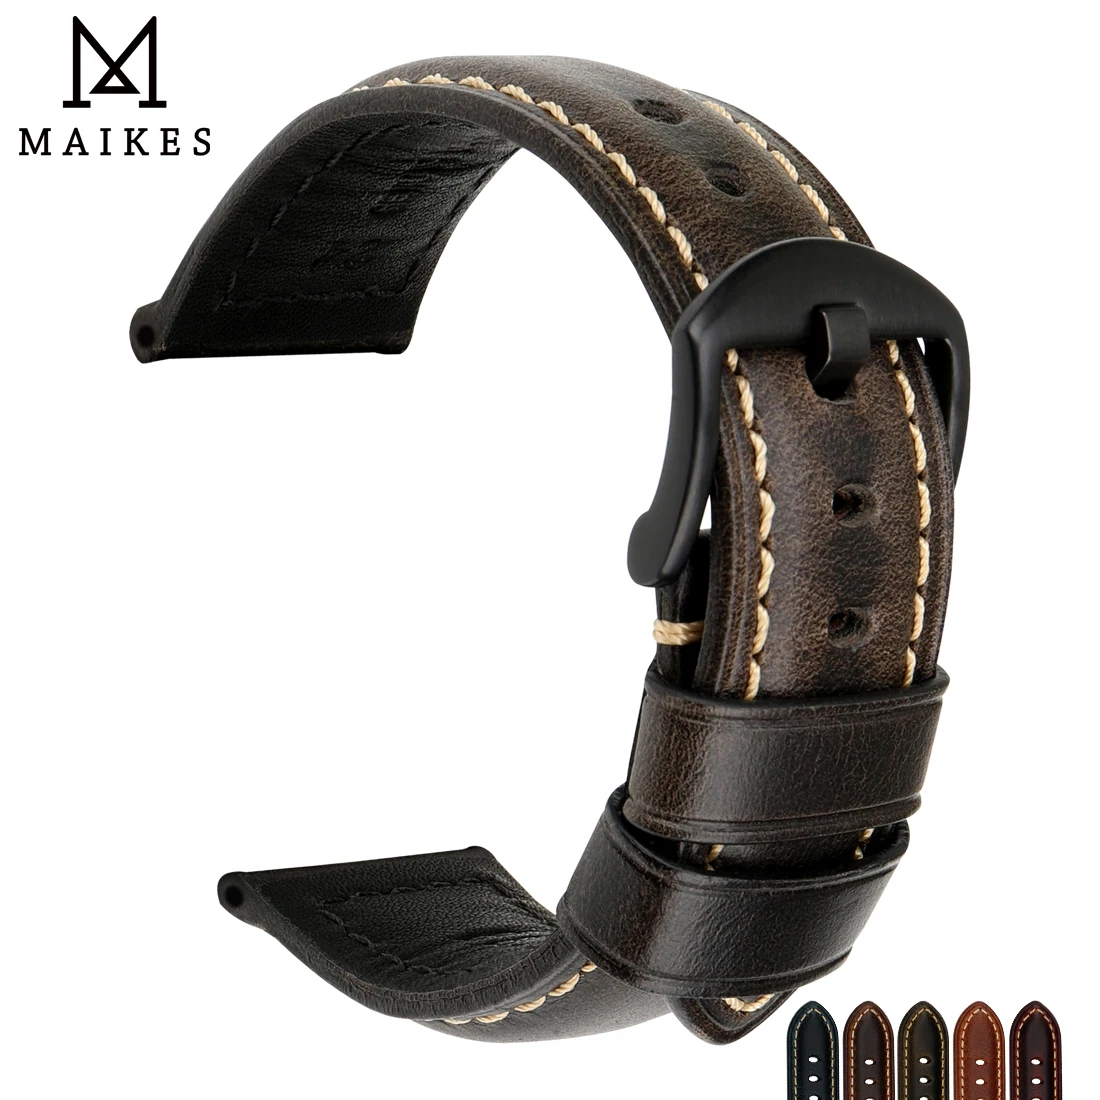 MAIKES cinturino per orologio cinturino accessori per orologi 20mm 22mm 24mm cinturino in pelle di mucca Vintage per cinturino fossile Panerai